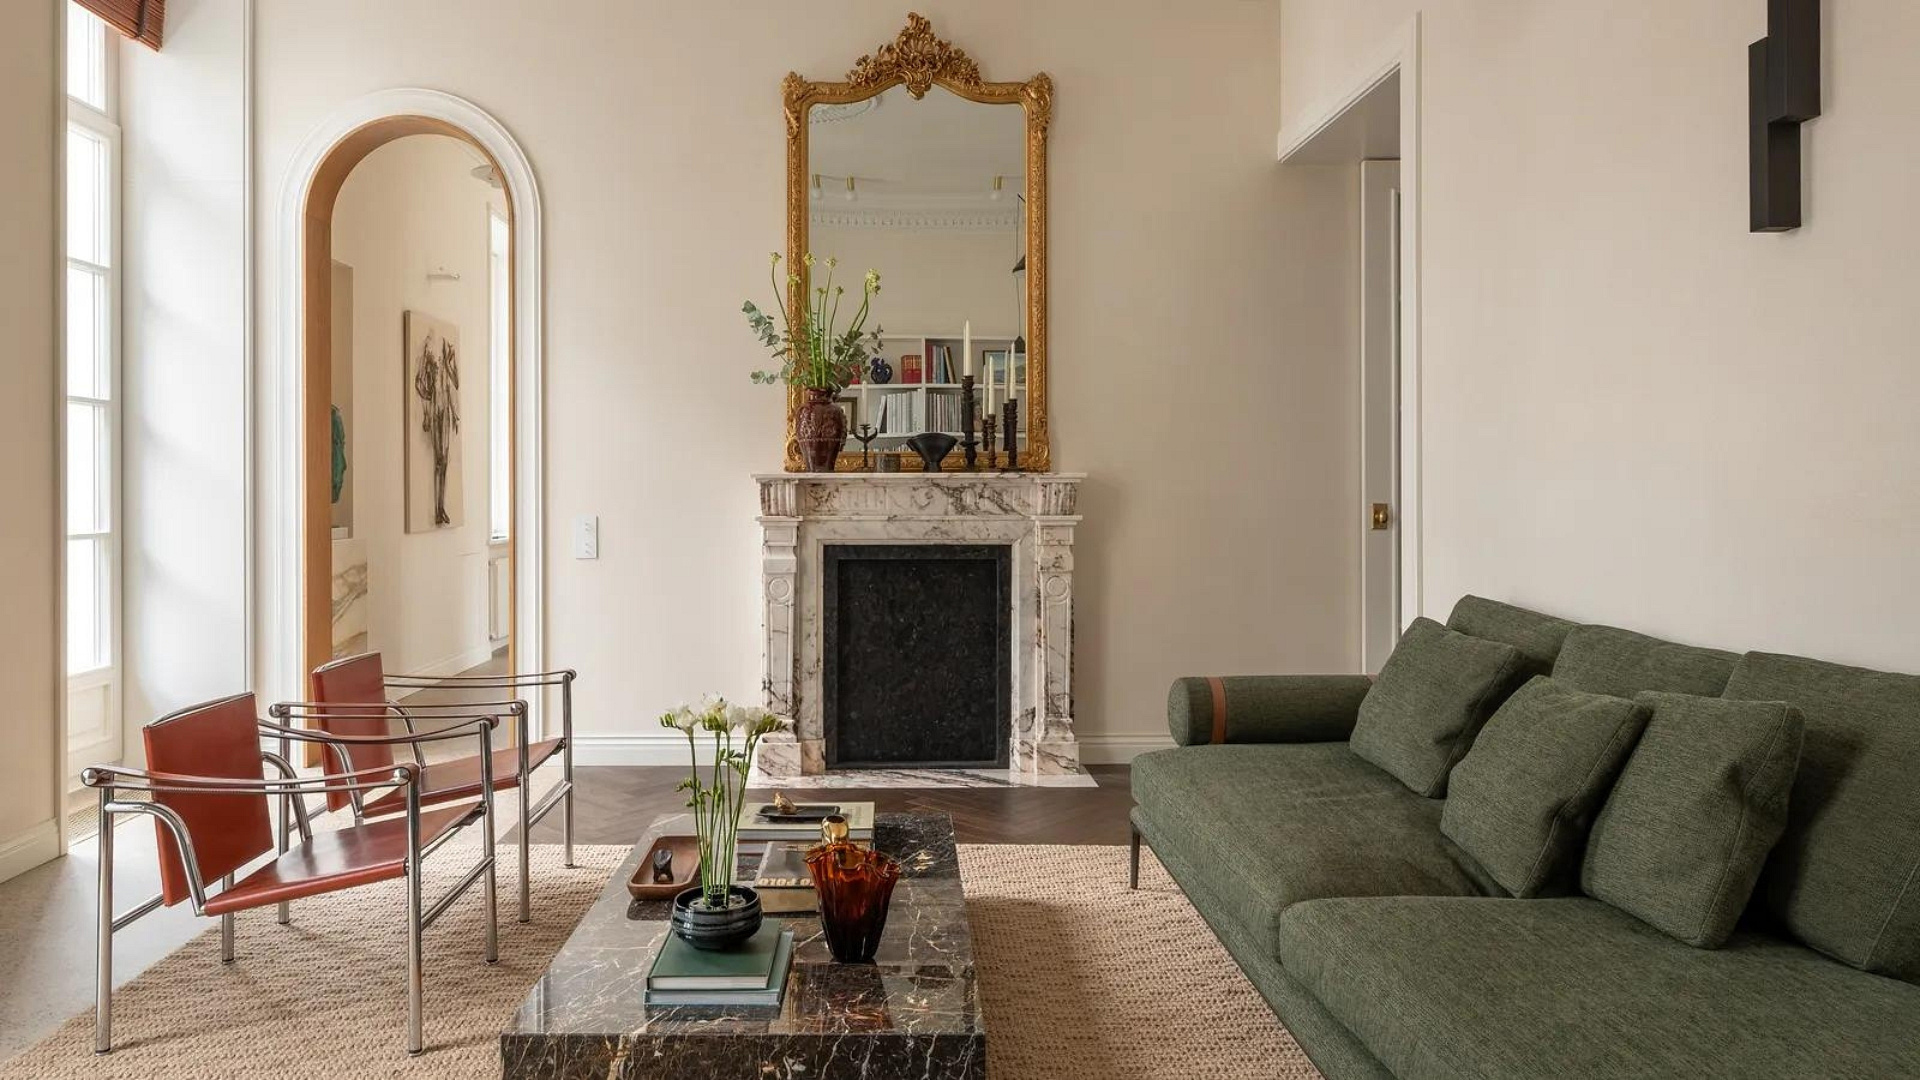 Spokojne, inspirowane stylem mid-century modern mieszkanie z odważnym, kolorowym sekretem